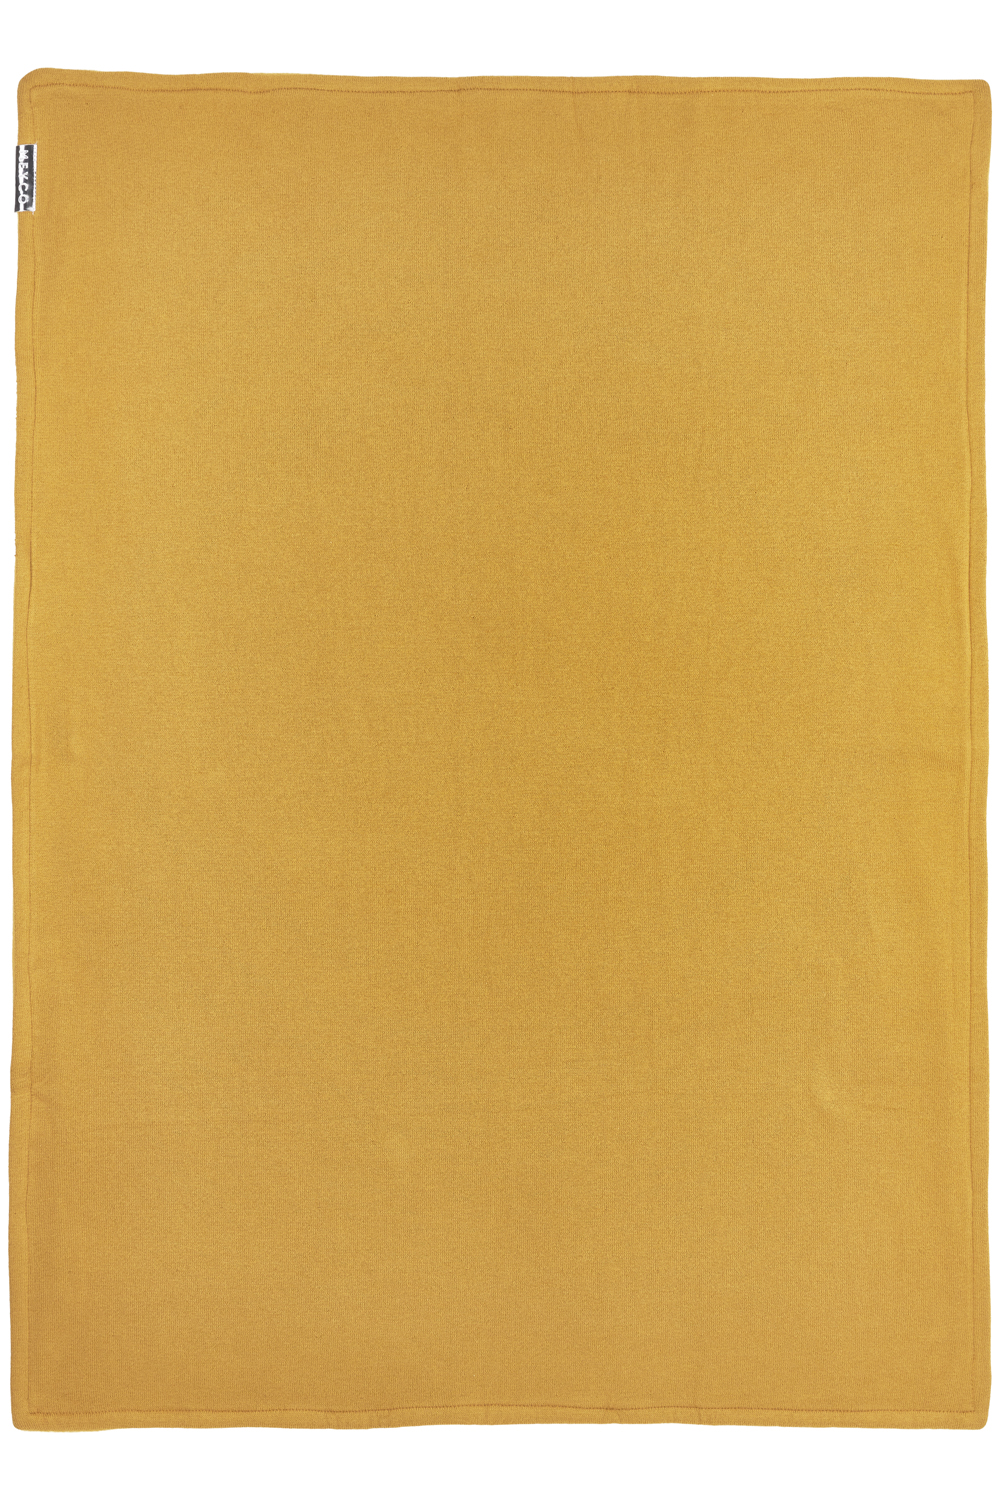 Ledikant deken Knit Basic velvet - honey gold - 100x150cm